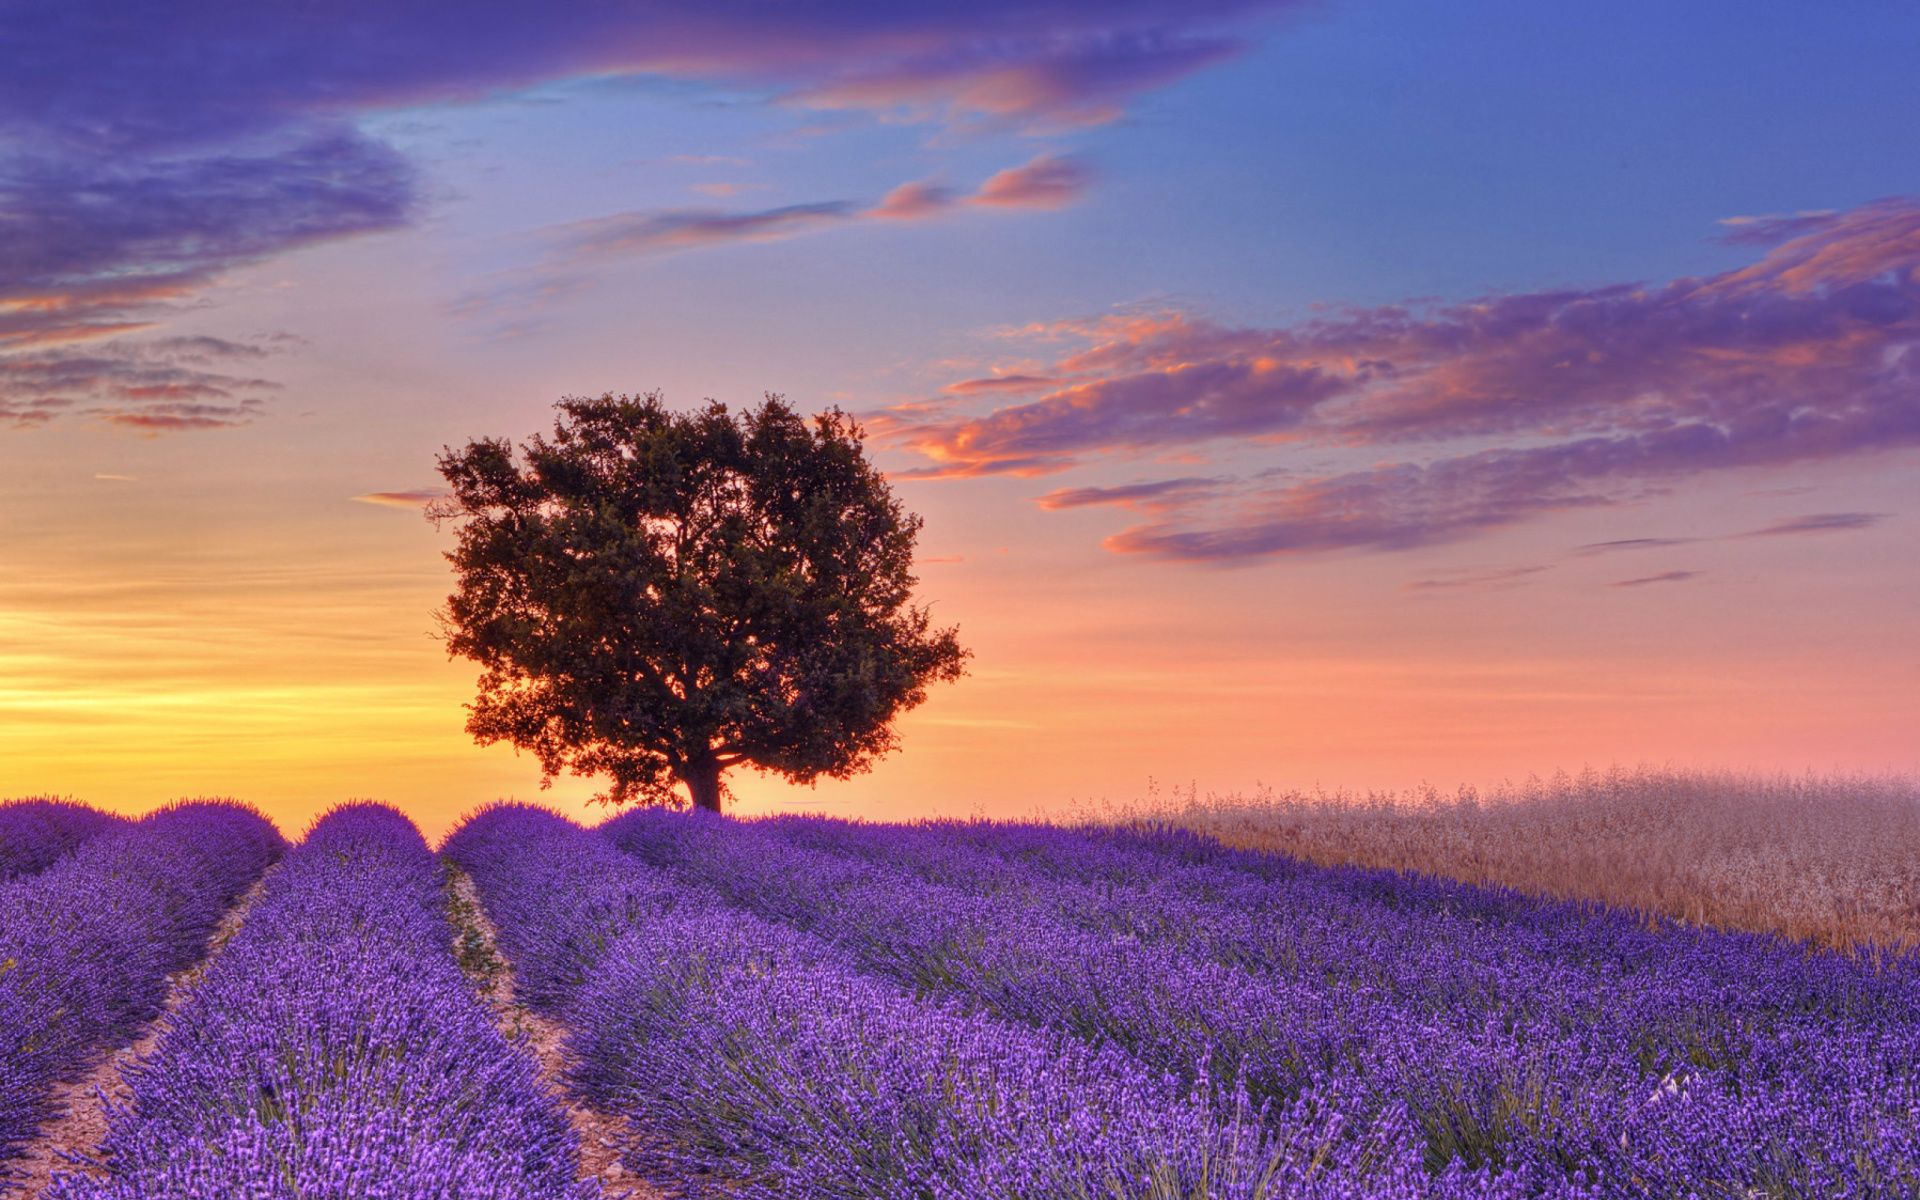 Cánh đồng oải hương (Lavender fields): Những cánh đồng oải hương rộng lớn và lãng mạn sẽ khiến bạn phải ngỡ ngàng. Muôn vàn mảng màu tím nồng nàn đang reo rắt, tạo nên một vẻ đẹp lãng mạn và tuyệt vời. Chắc chắn bức ảnh sẽ đưa bạn vào một thế giới đầy mơ mộng.